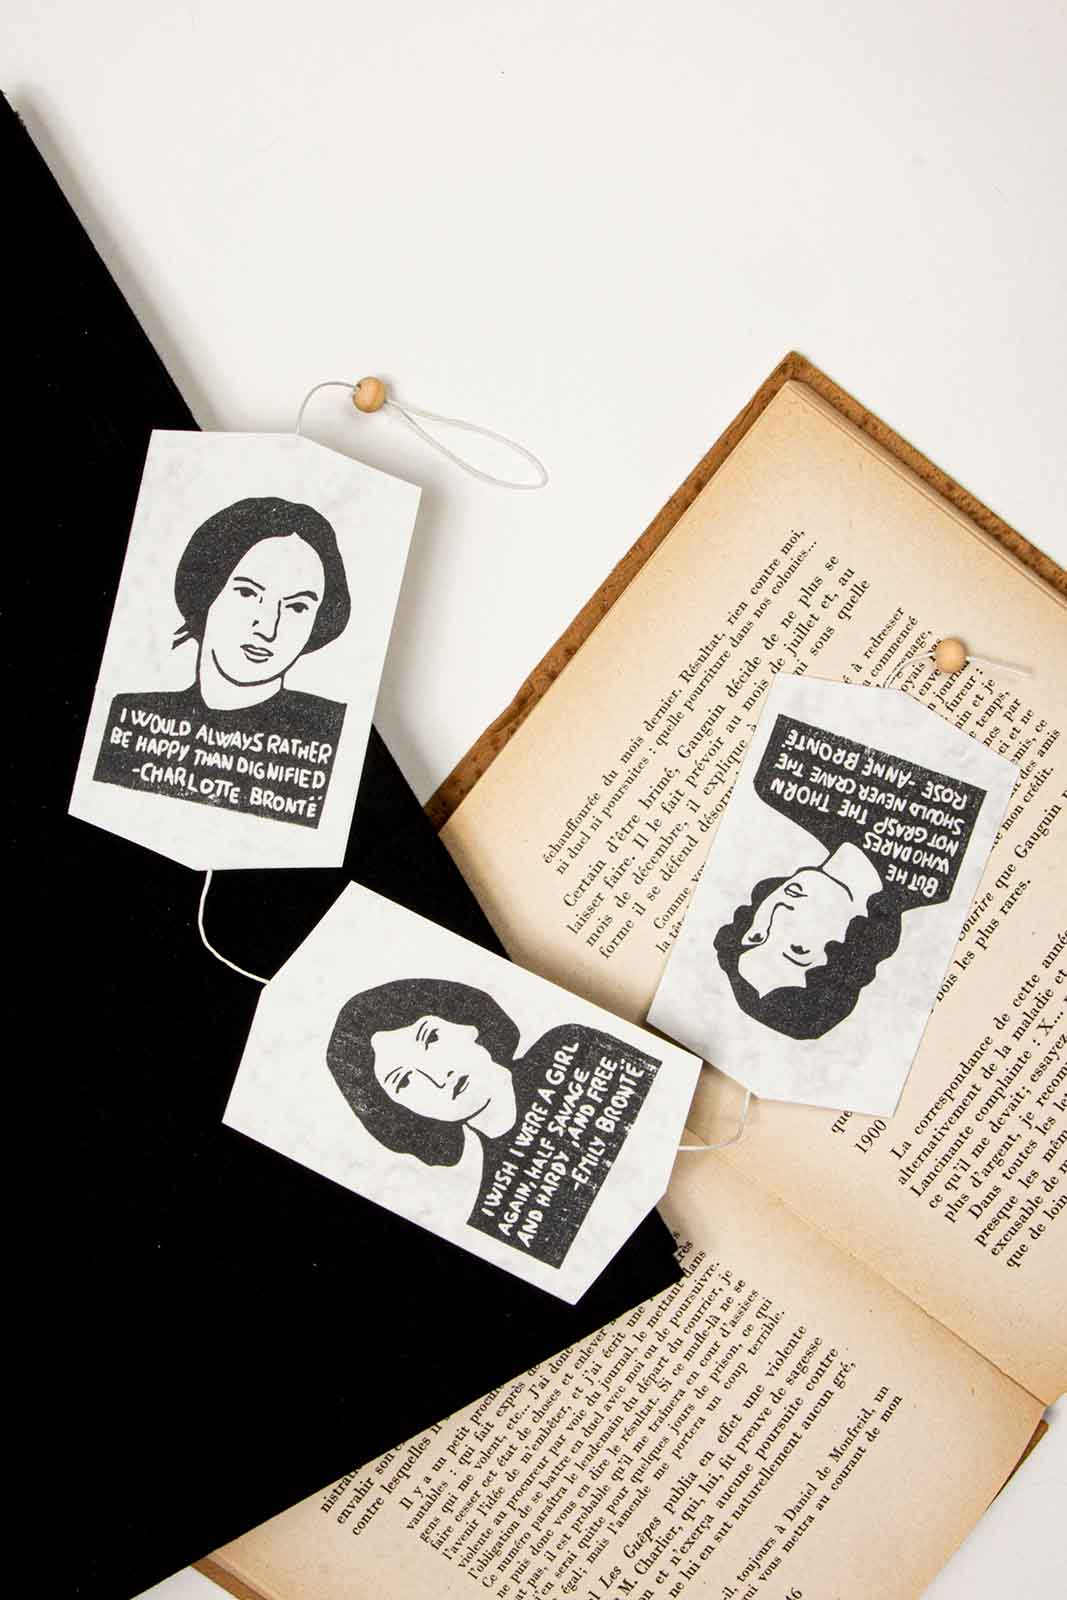 Guirnalda negro con retratos y citas de las hermanas Brontë